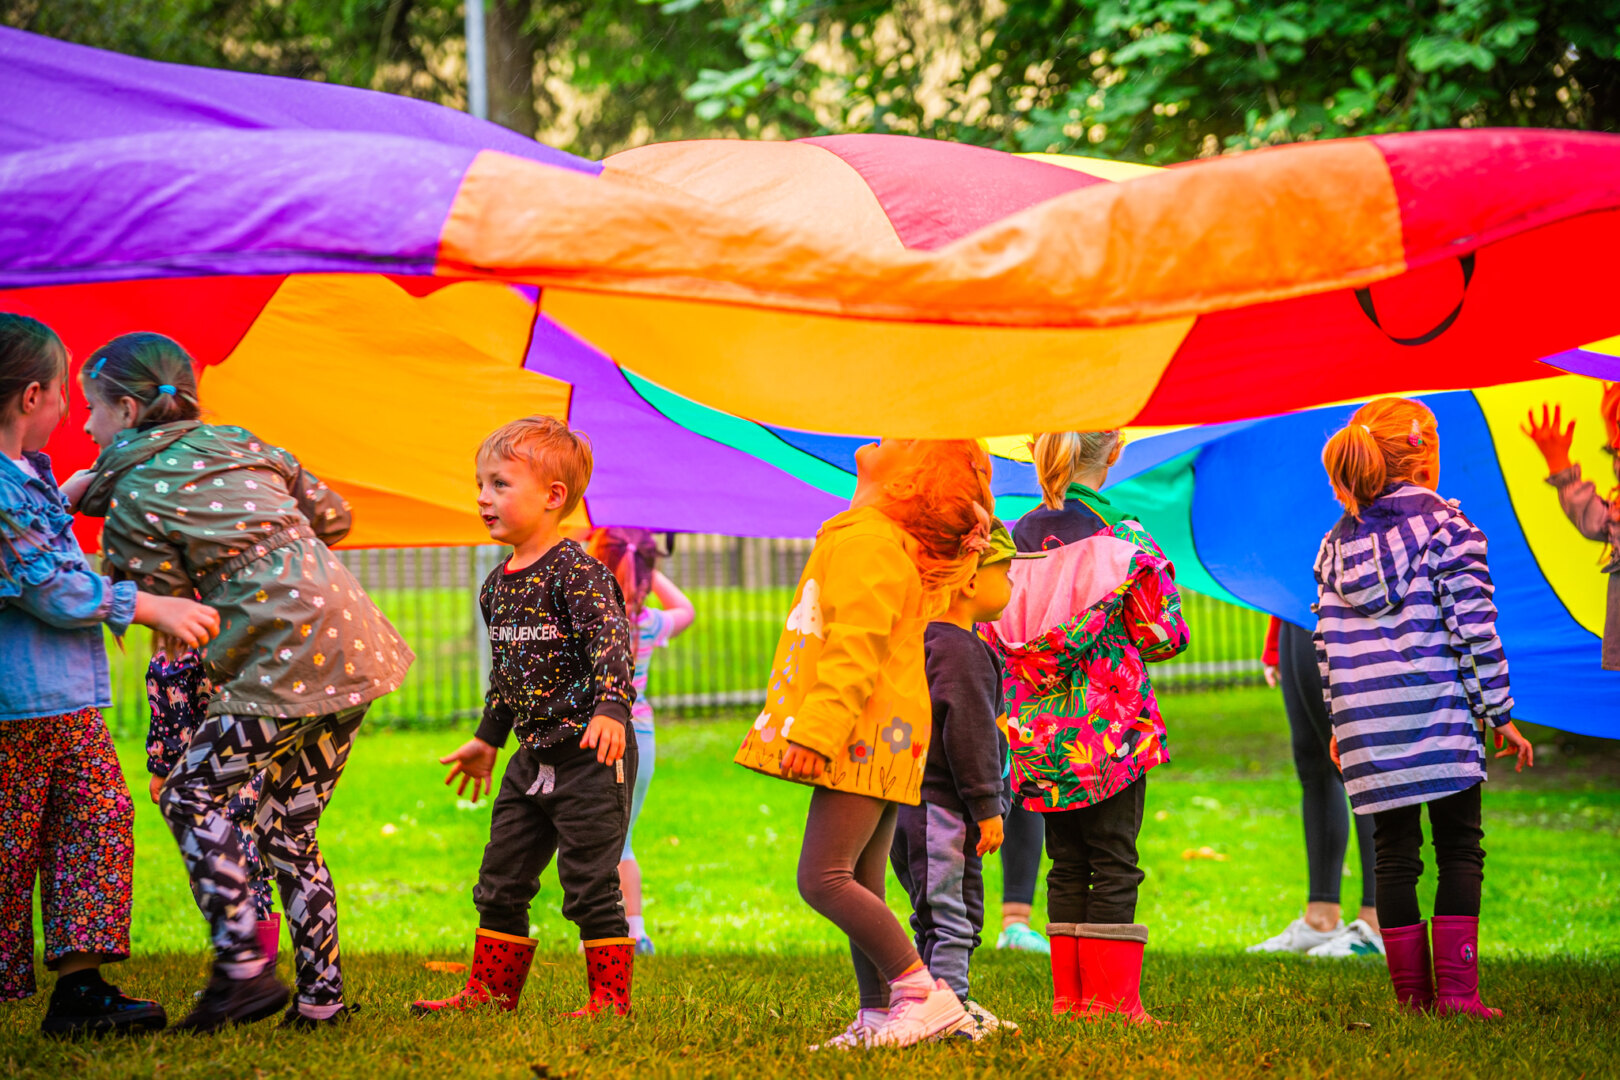 Children under the rainbow game